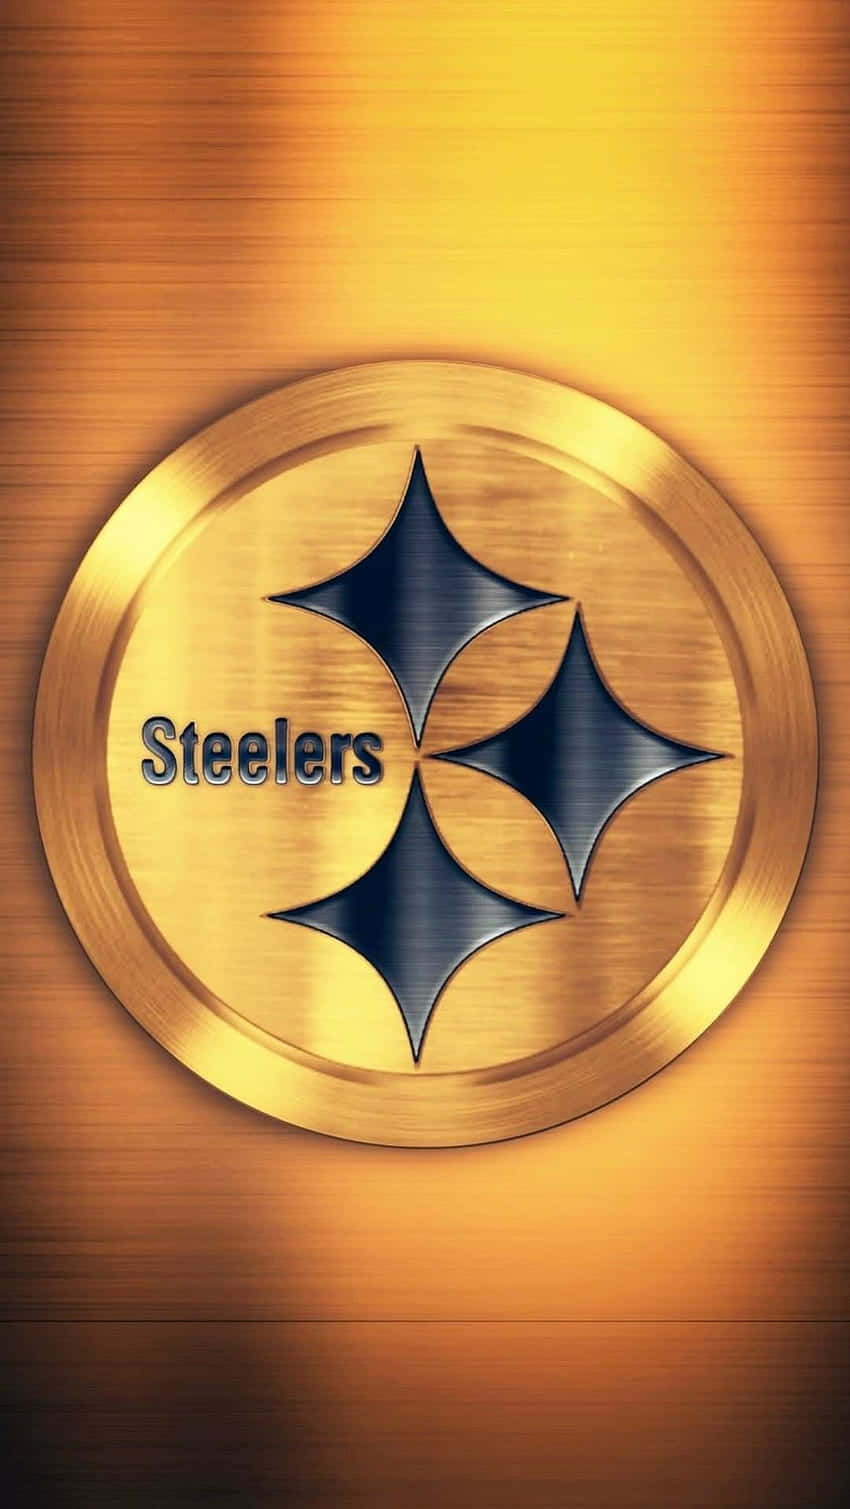 Steelers-logo 850 X 1509 Wallpaper